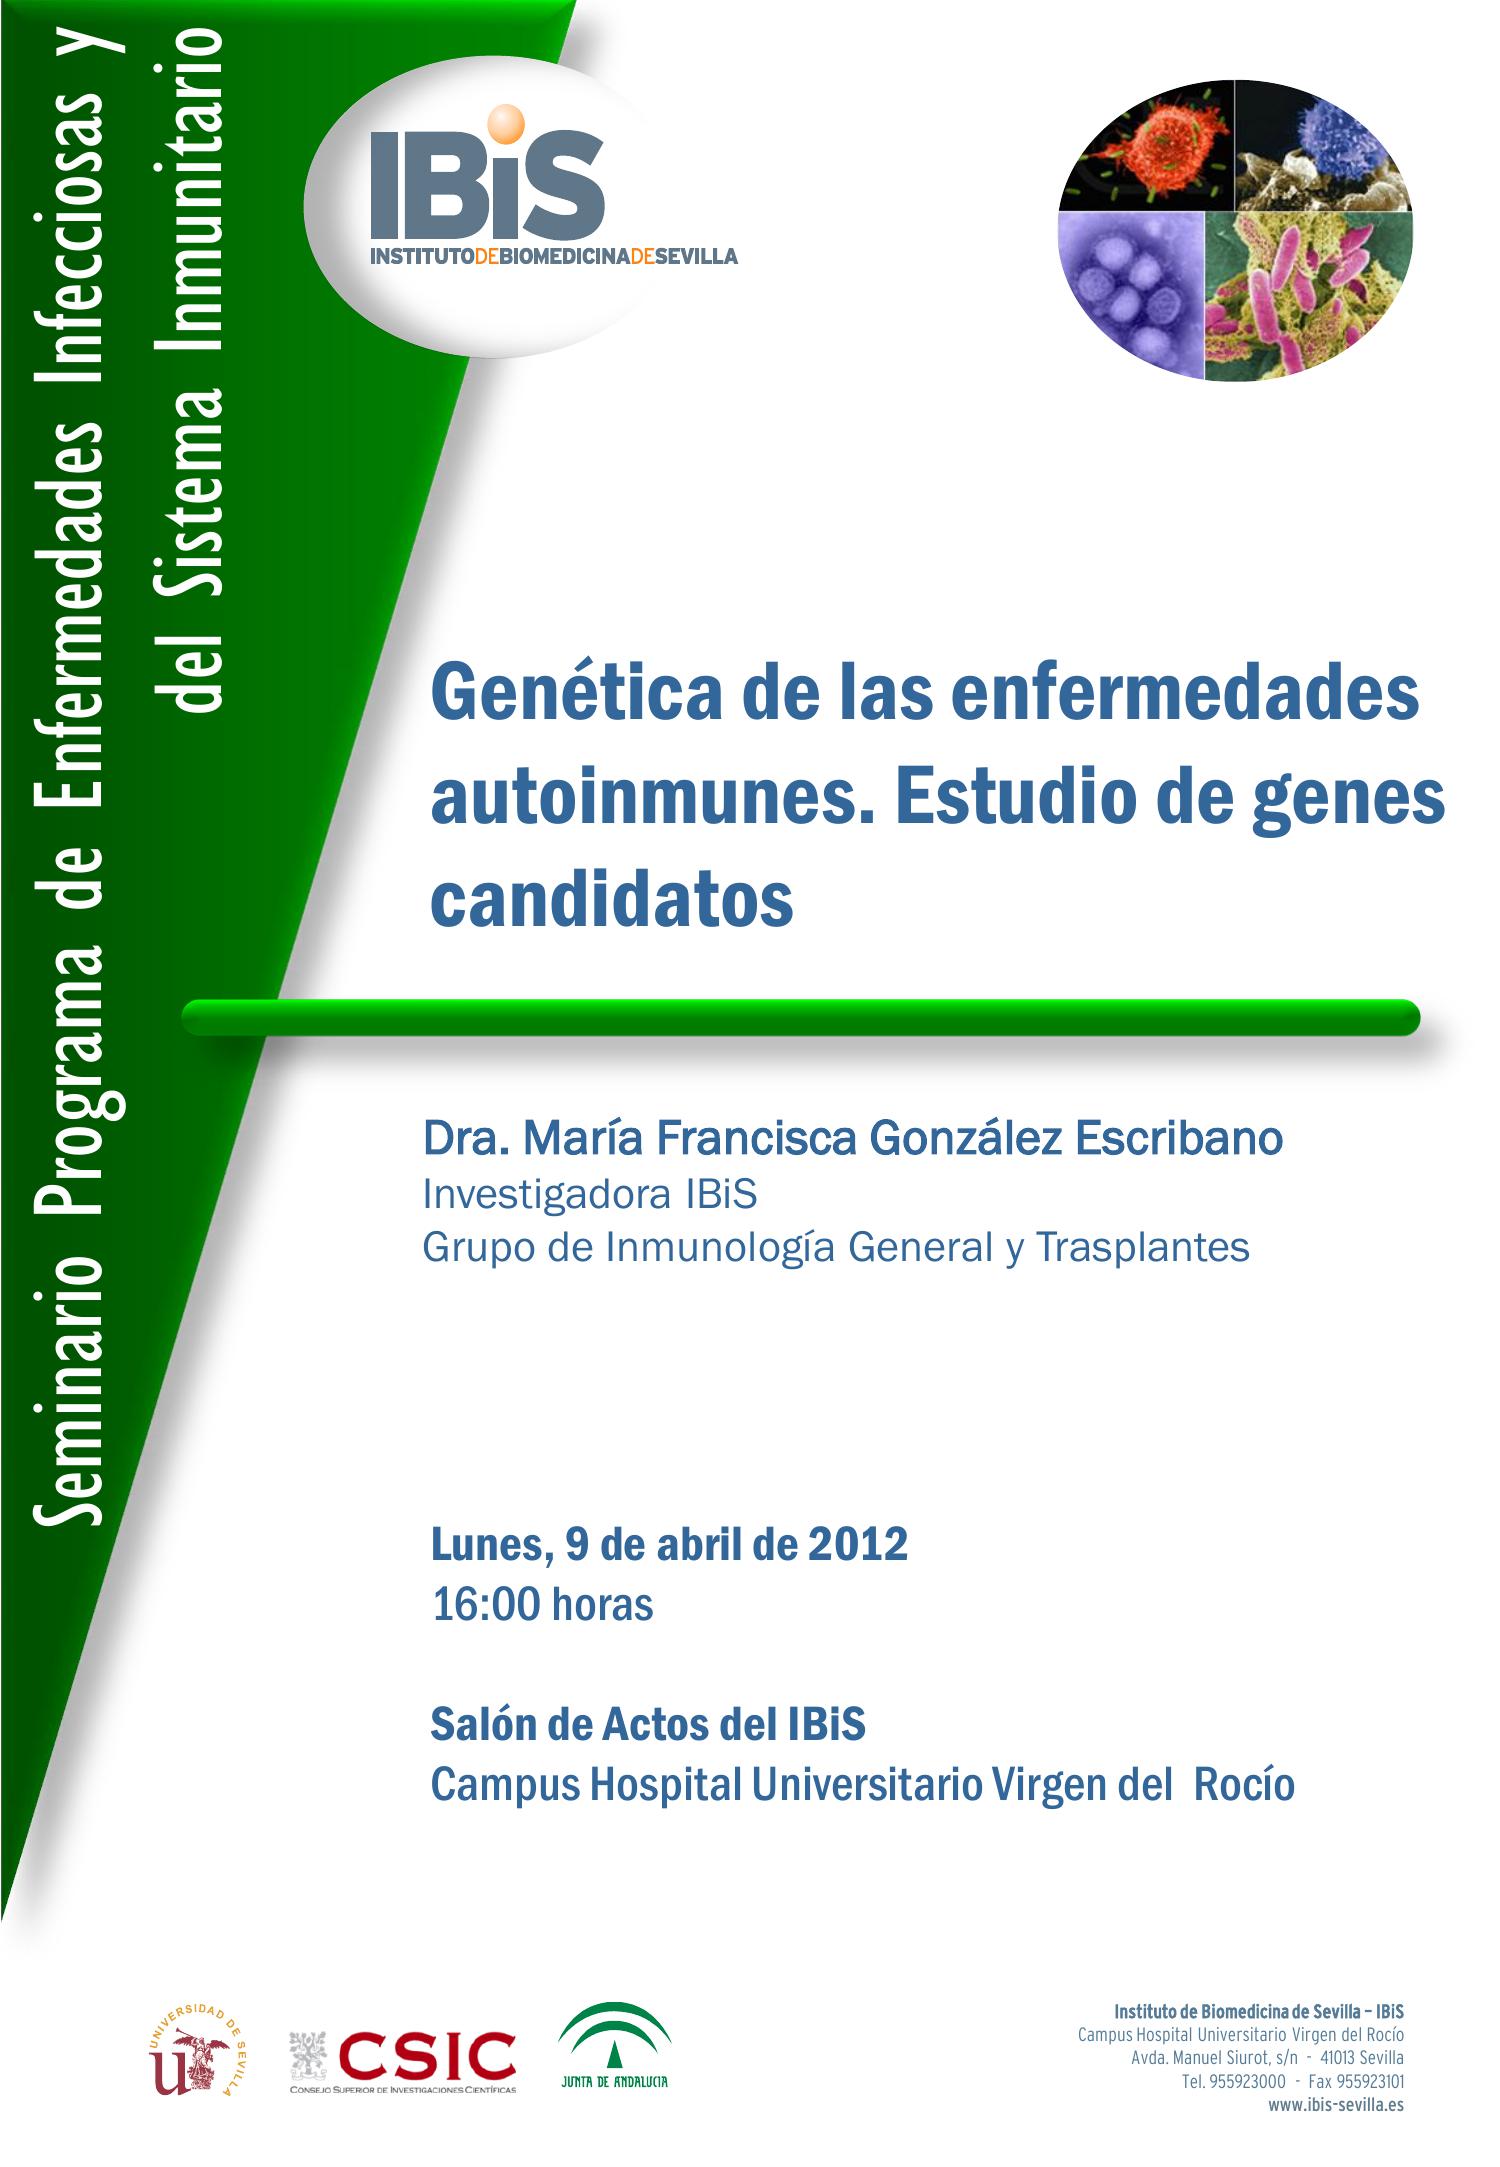 Poster: Genética de las enfermedades autoinmunes. Estudio de genes candidatos.